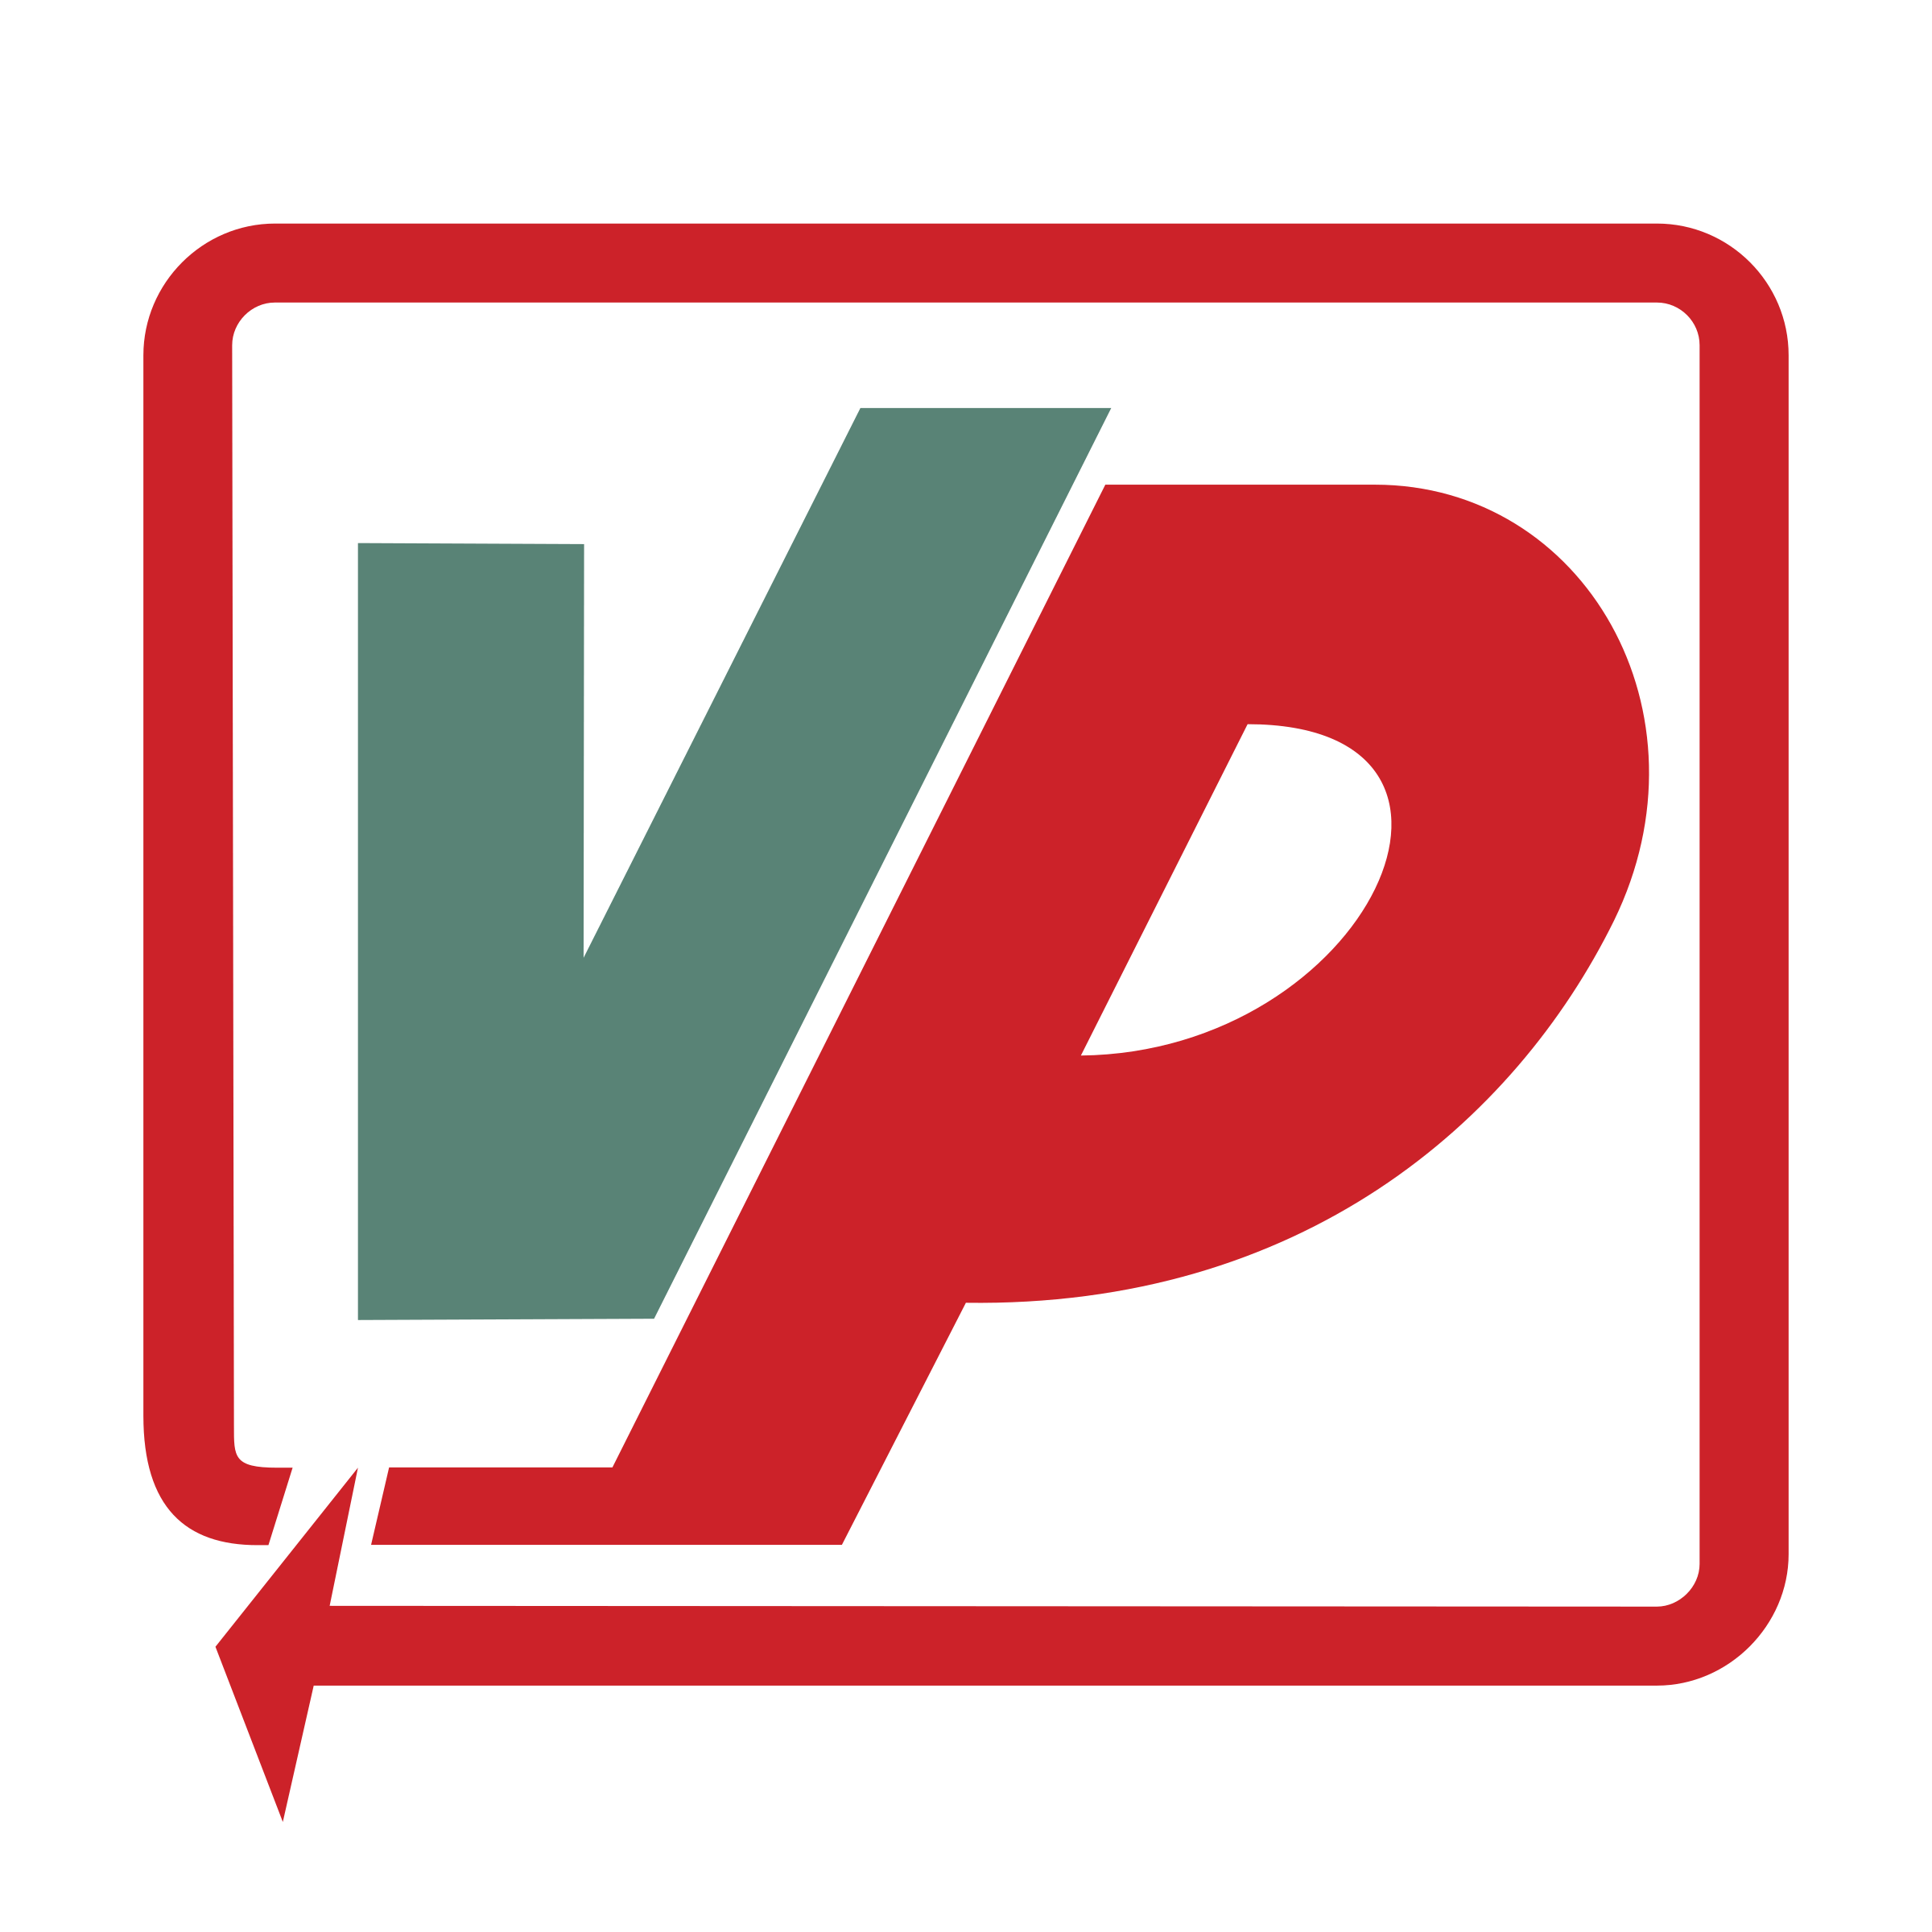 VP Logo - VP Logo PNG Transparent & SVG Vector